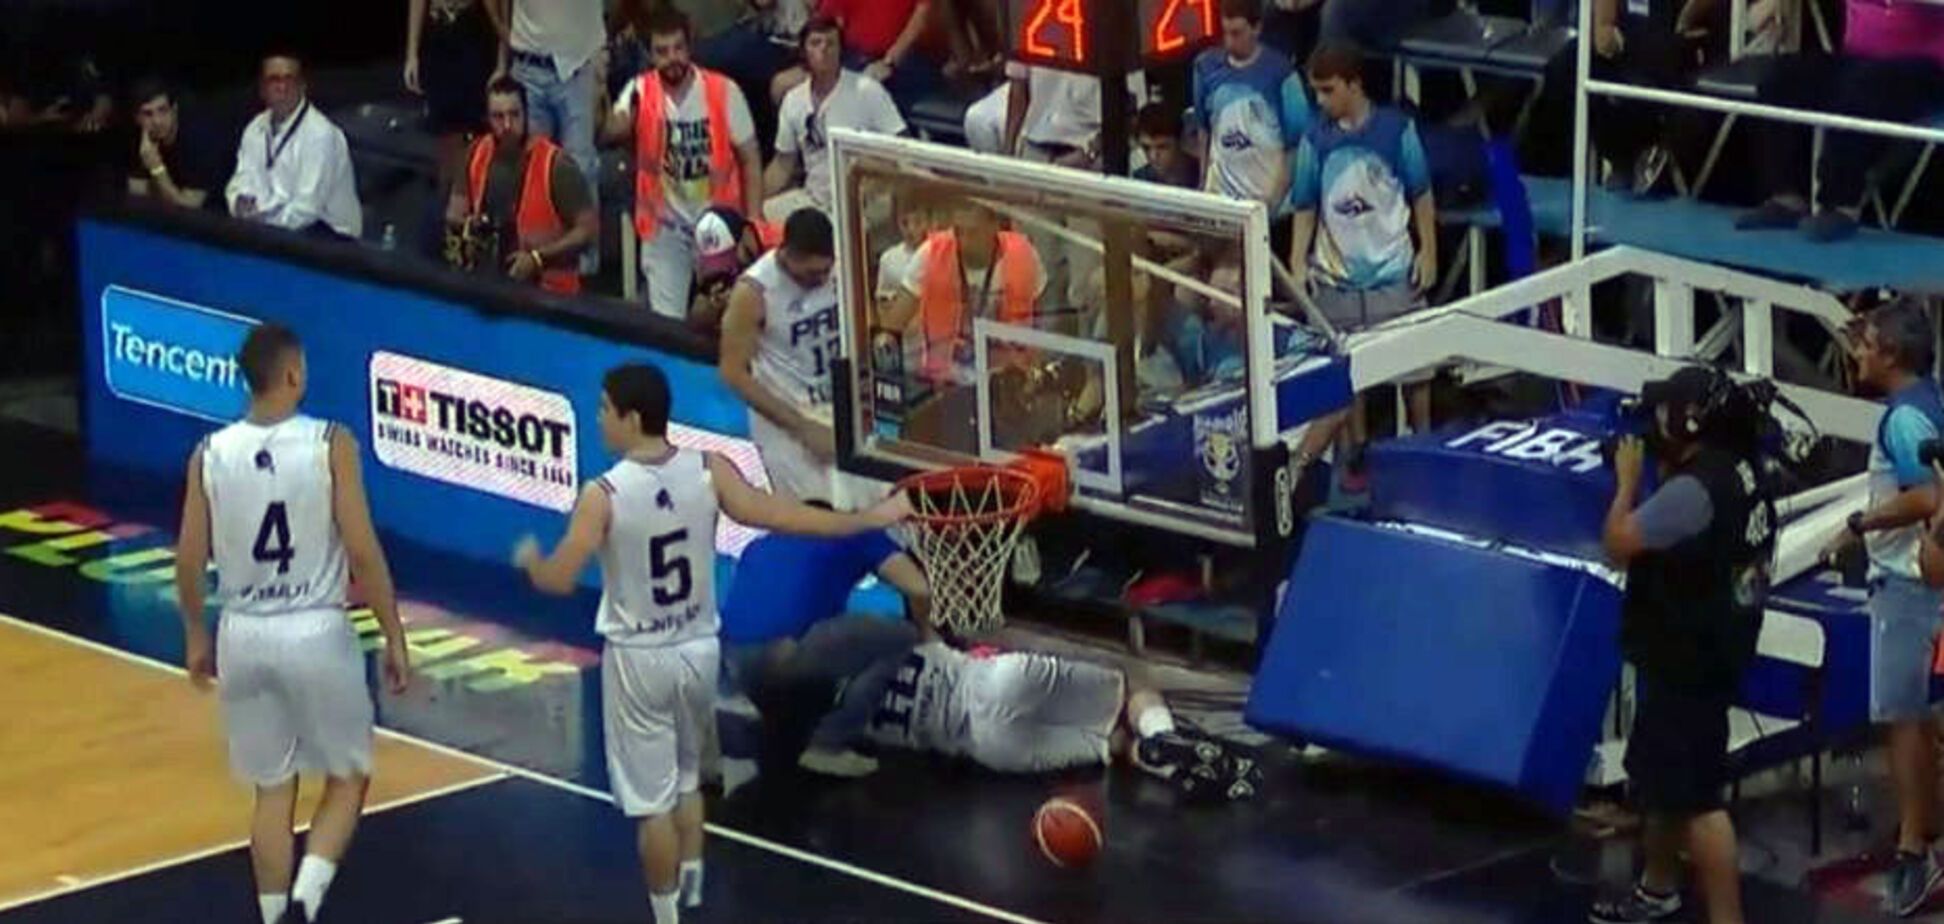 На голову игрока во время матча упала баскетбольная стойка со щитом: момент попал в прямой эфир